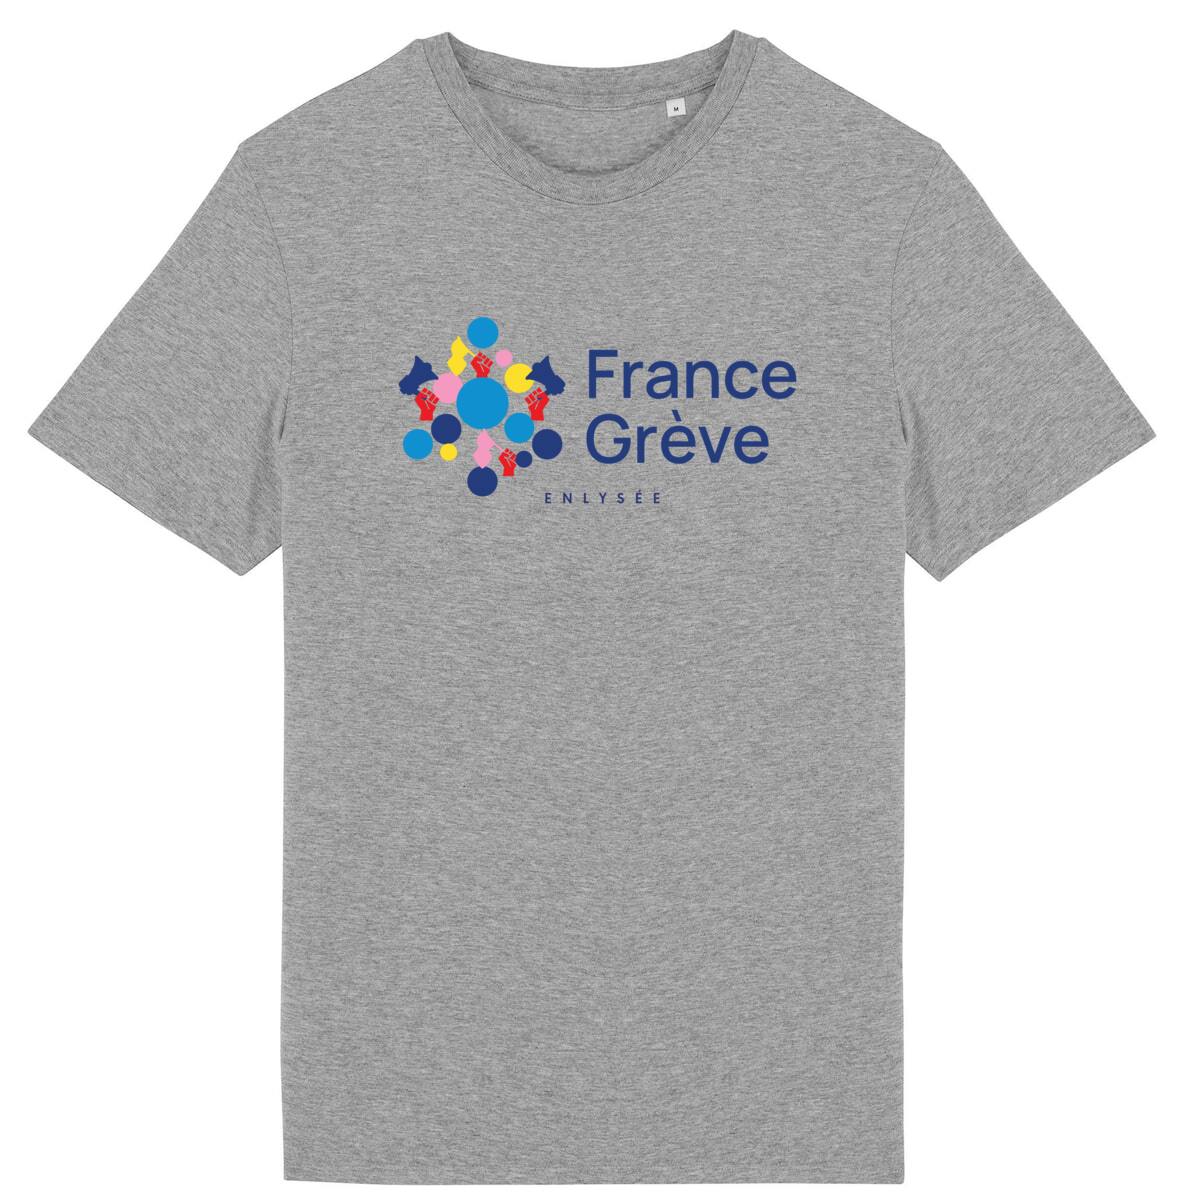 Le T-Shirt France Grève